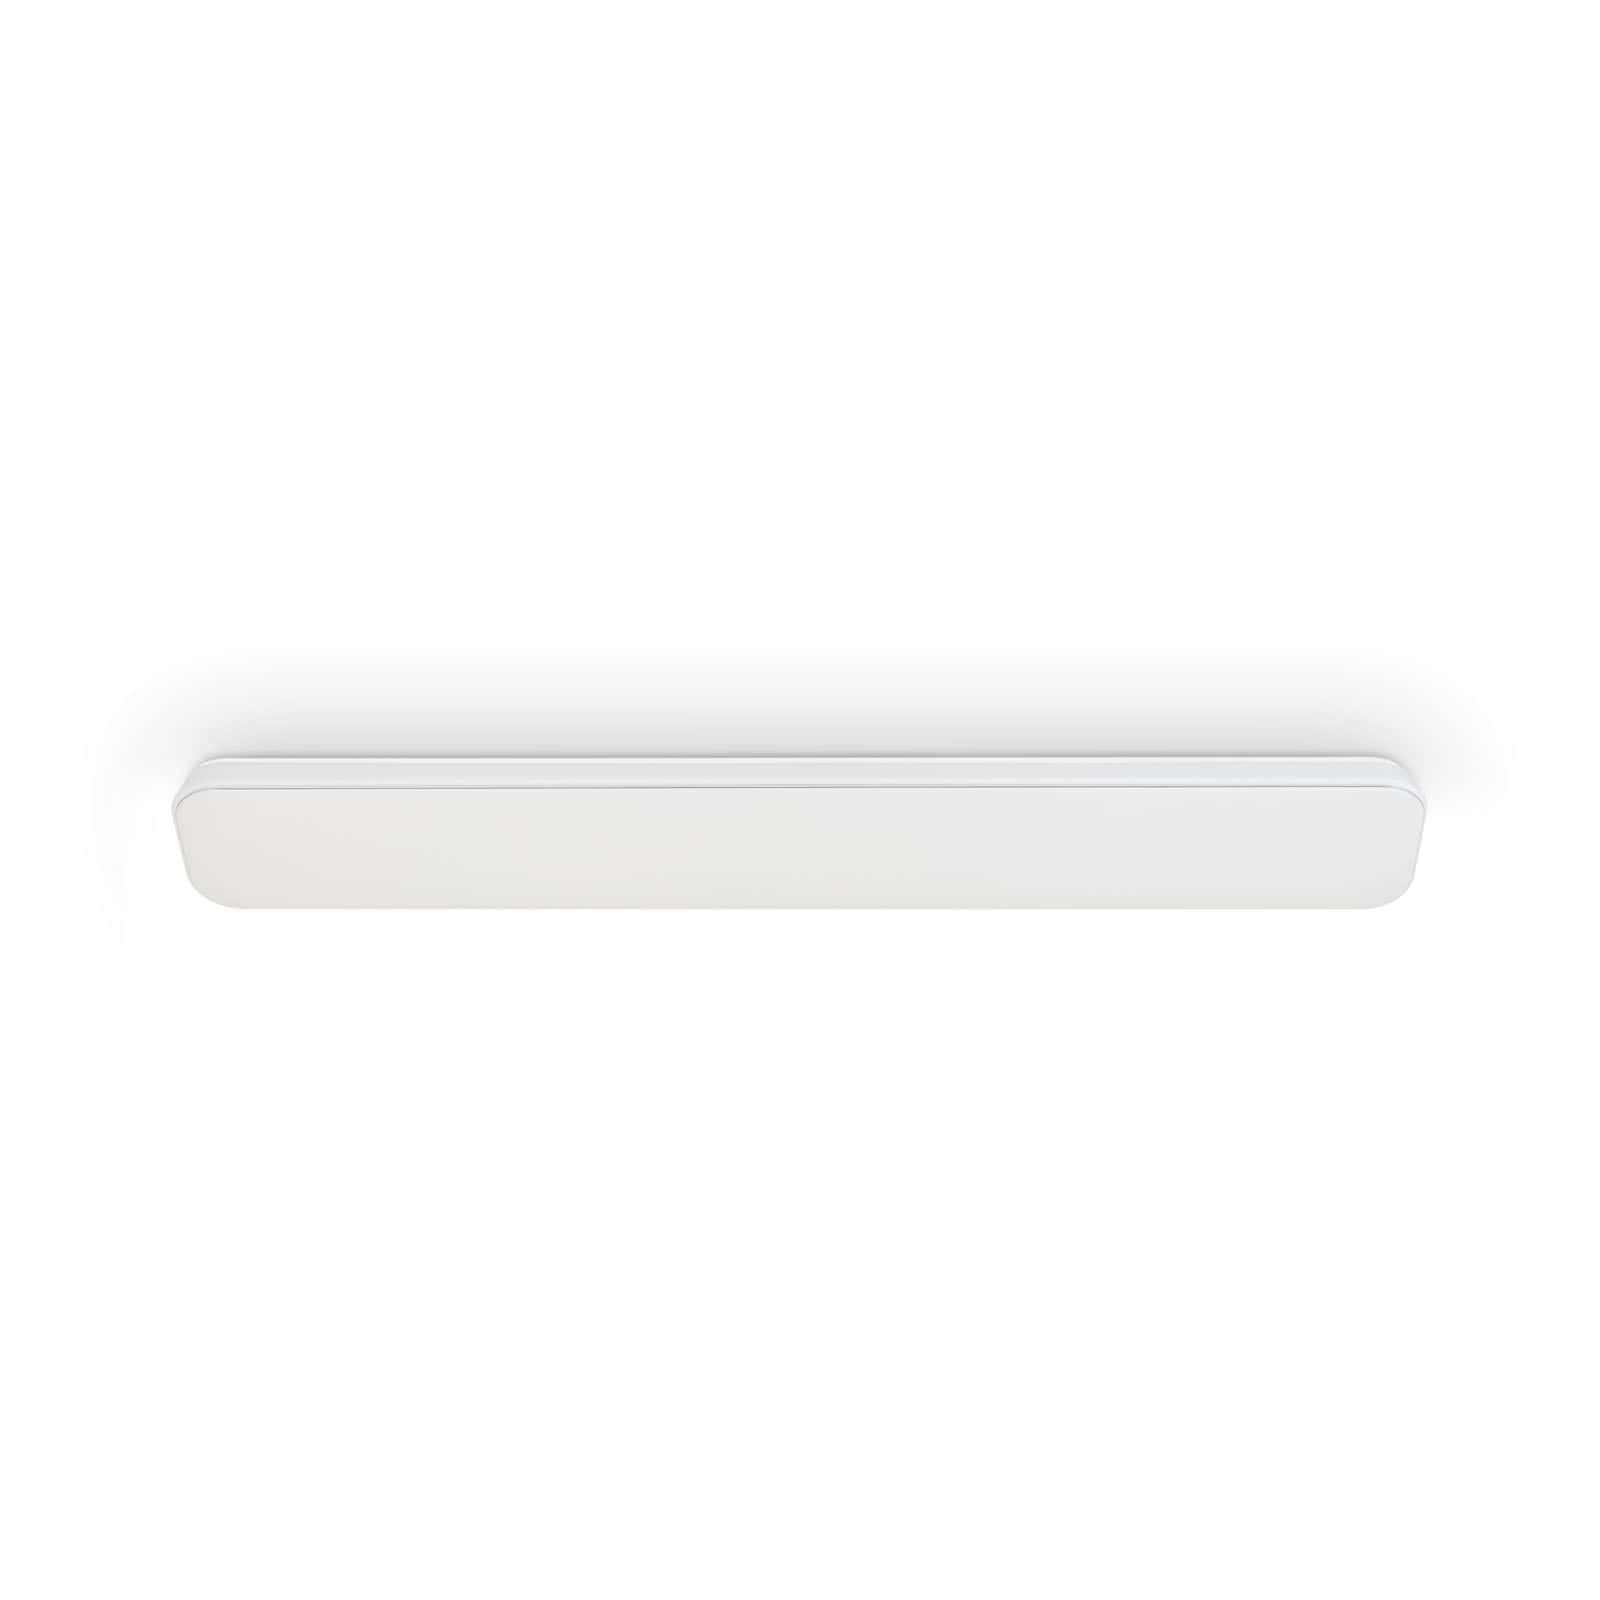 TELEFUNKEN LED Plafonnier 115,5 cm 1x 48W 5100lm blanc